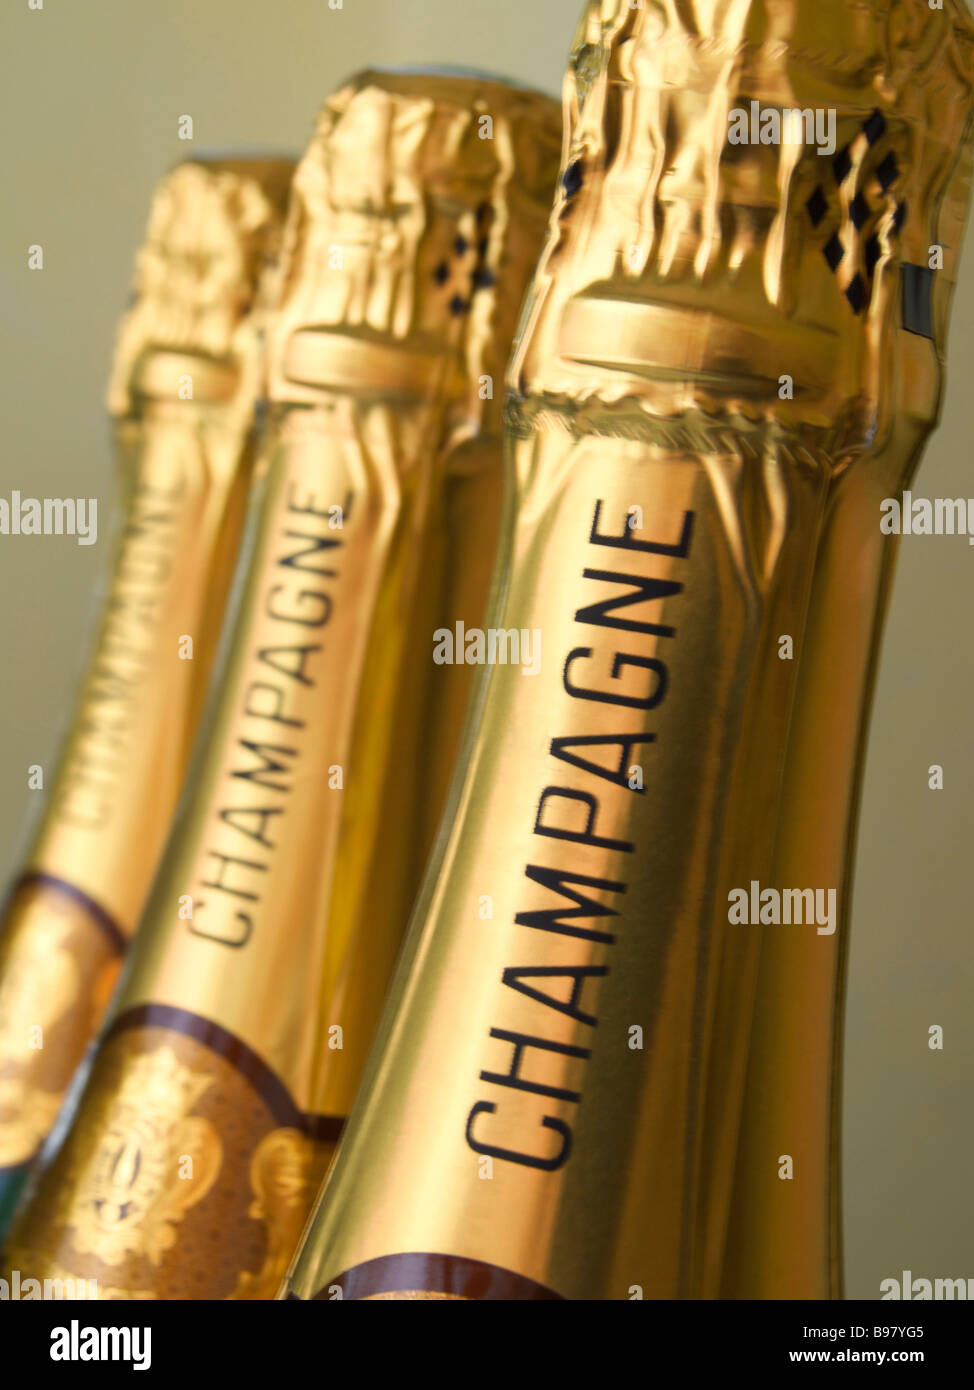 Botellas de champán Foto de stock